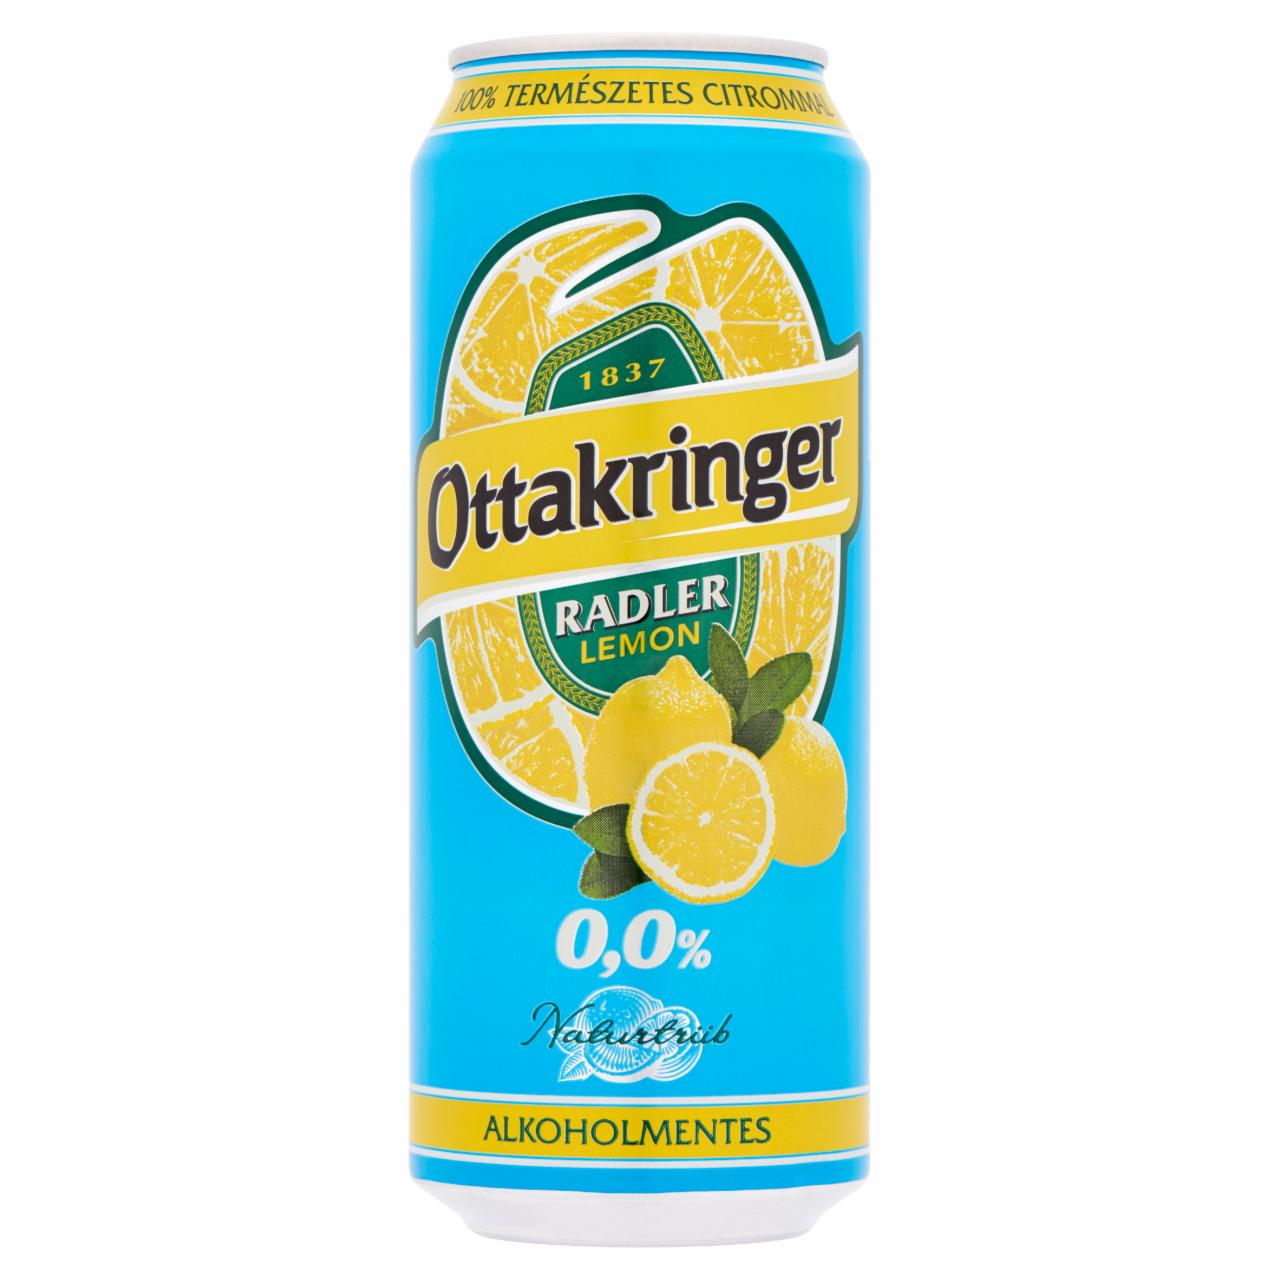 Képek - Ottakringer Radler 0,0% Lemon 0,5 l